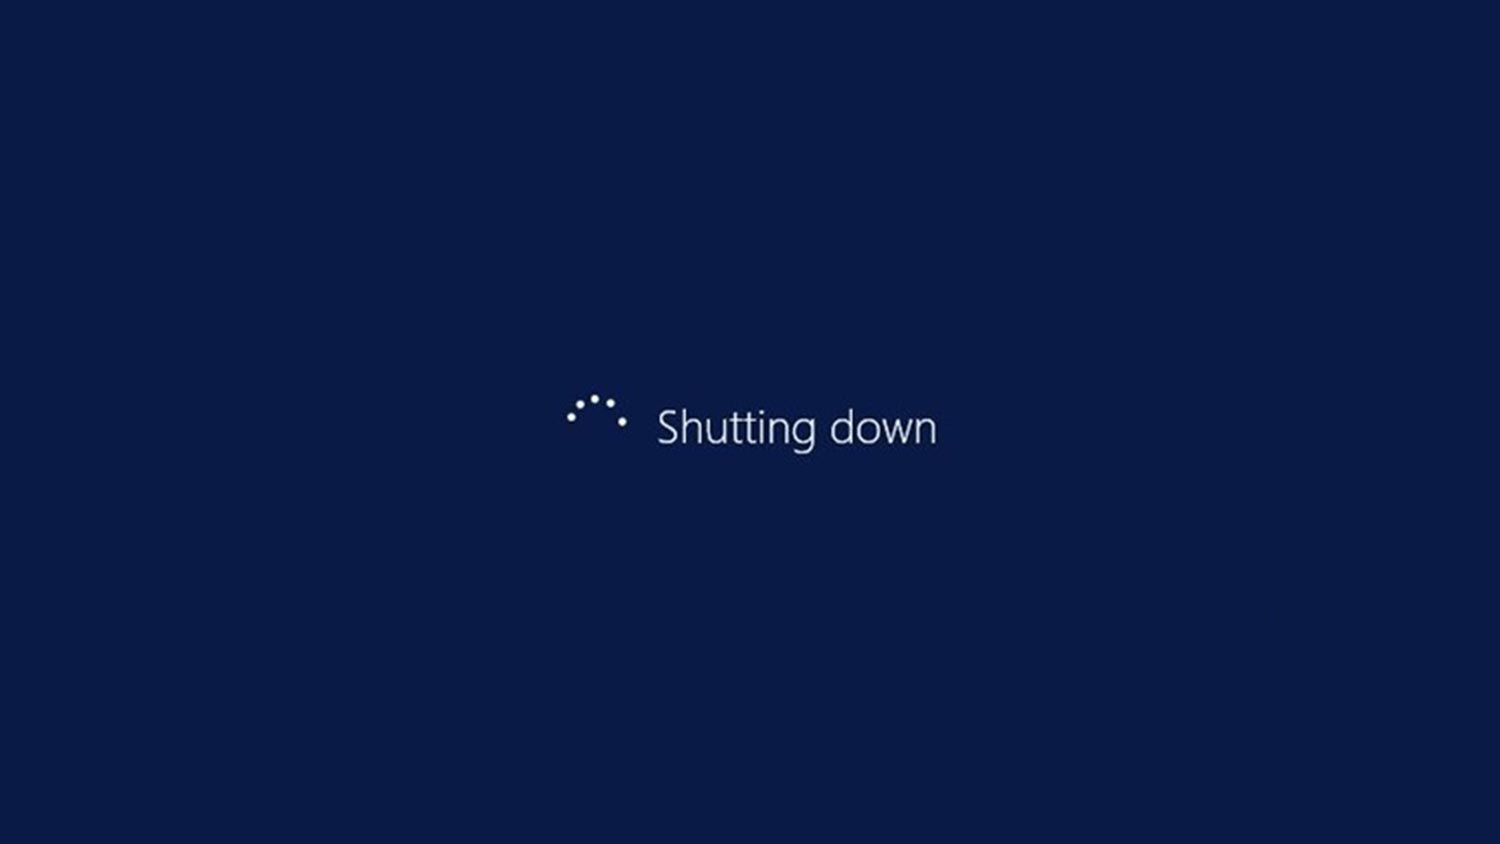 cancel shutdown windows 10